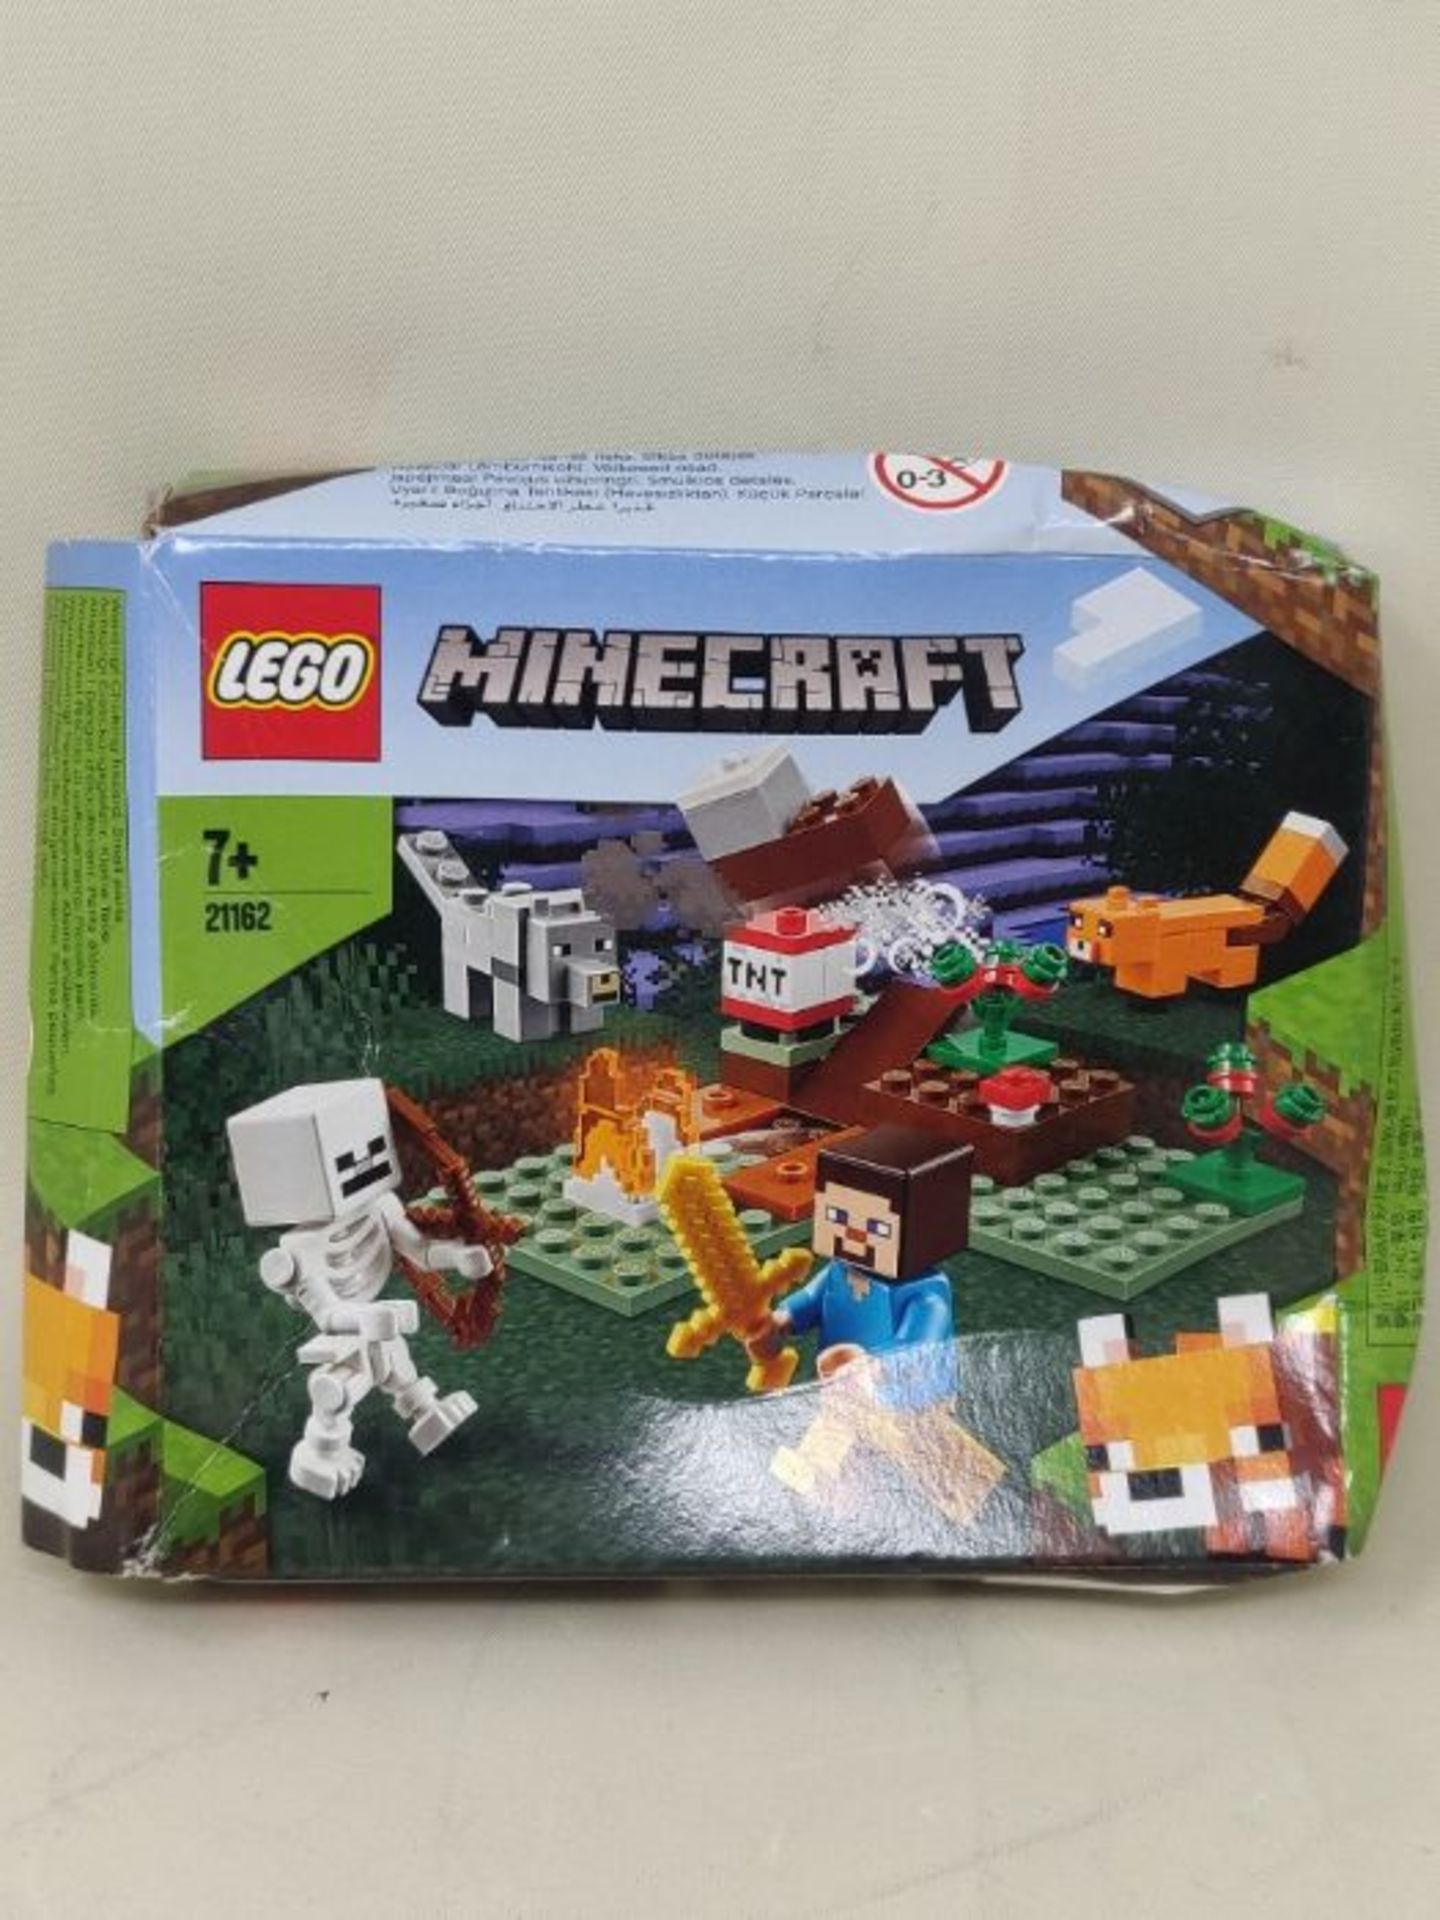 [INCOMPLETE] LEGOÂ 21162Â MinecraftÂ TheÂ TaigaÂ AdventureÂ BuildingÂ Se - Image 2 of 3